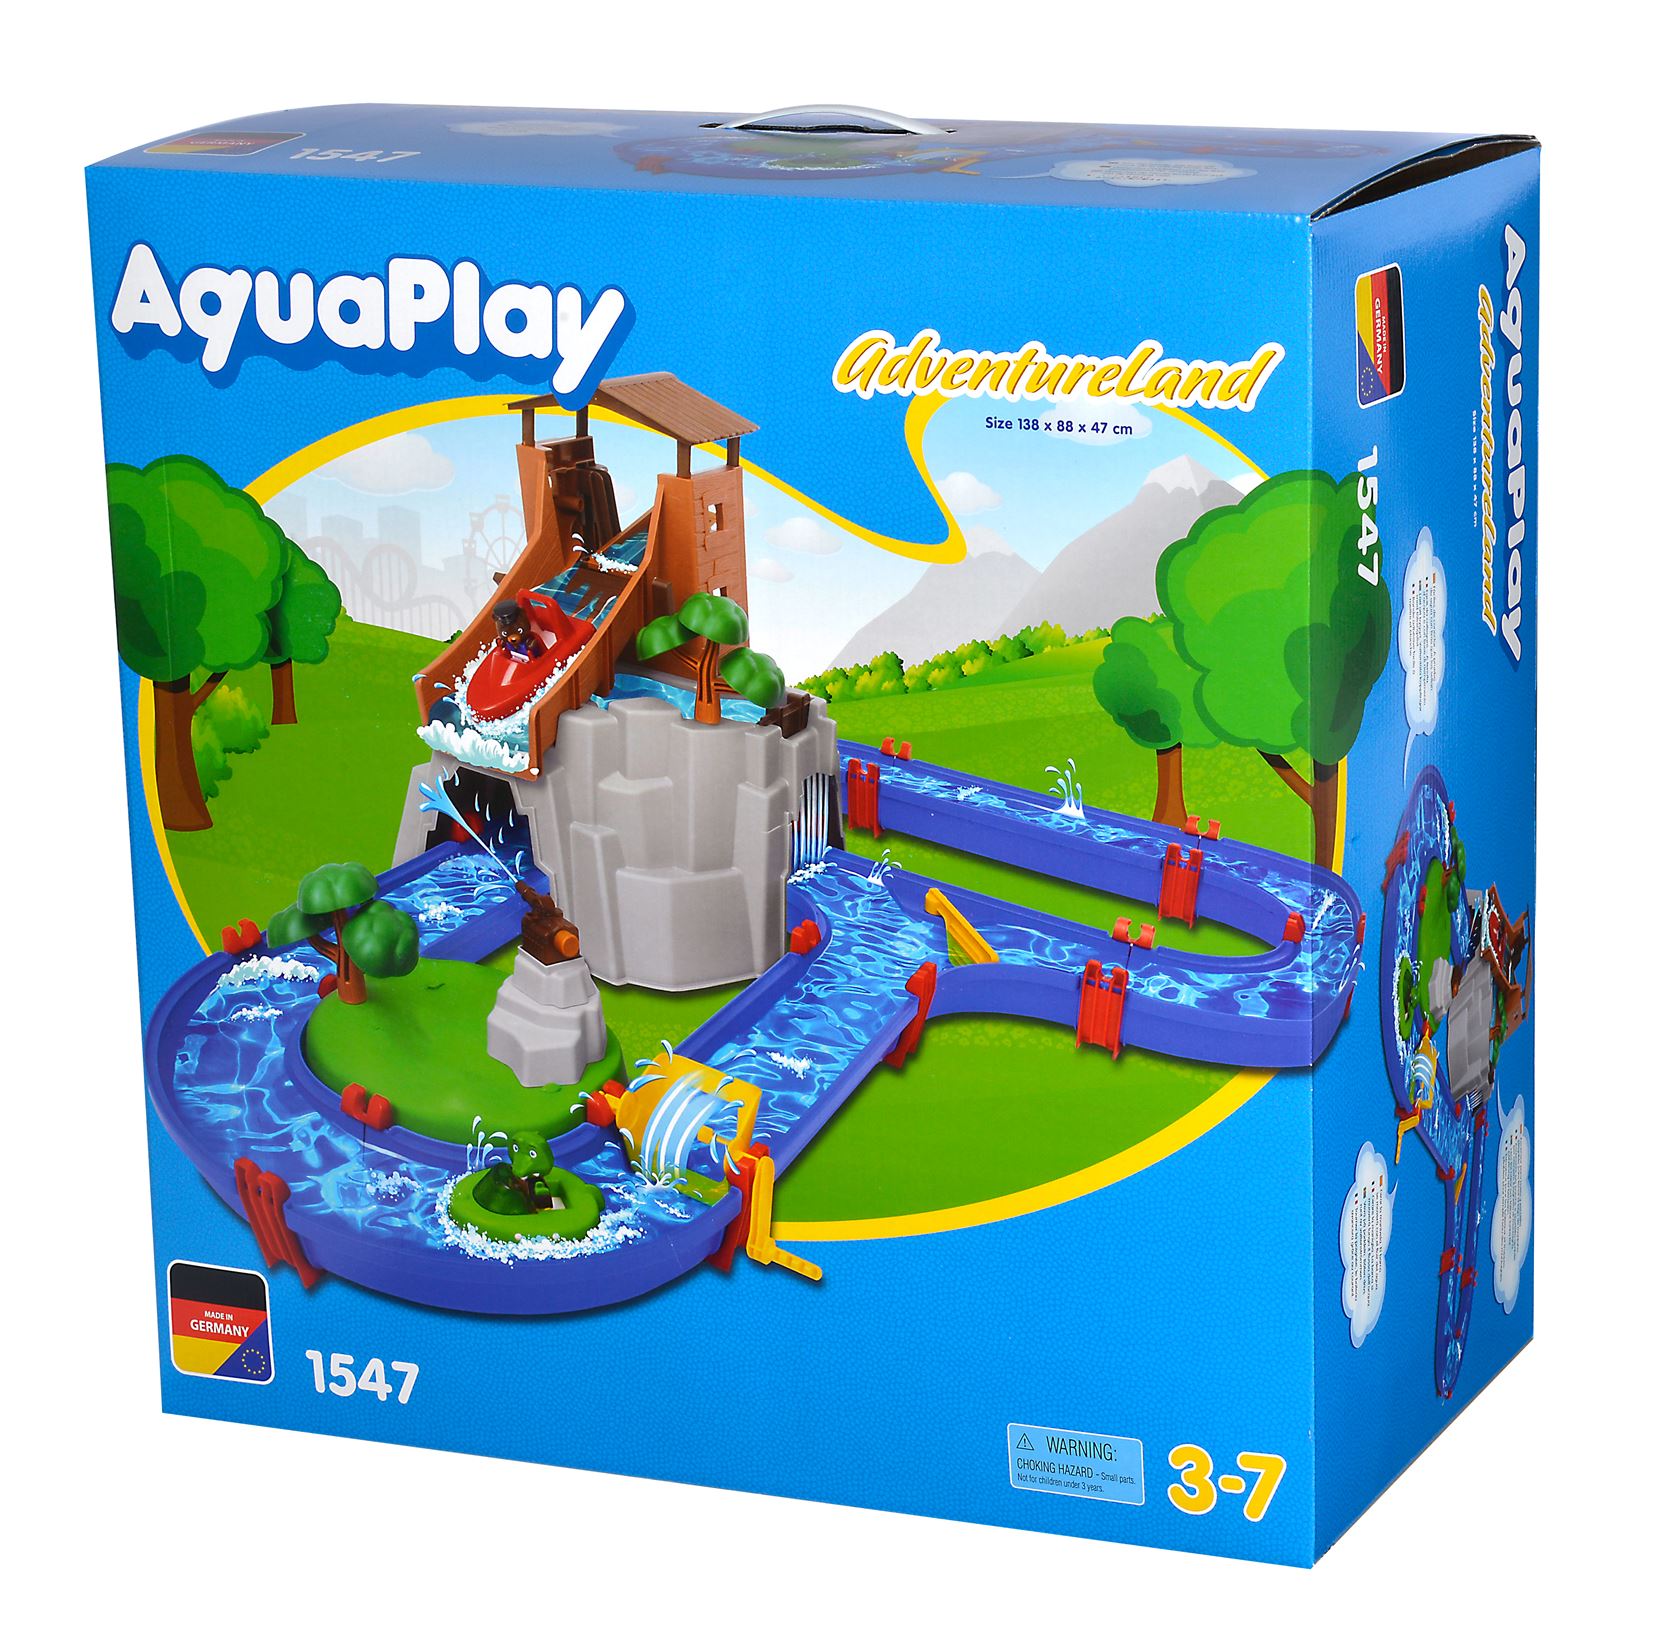 Parcours aquatique AquaPlay 'AdventureLand' - L138 x L88 x H47 cm